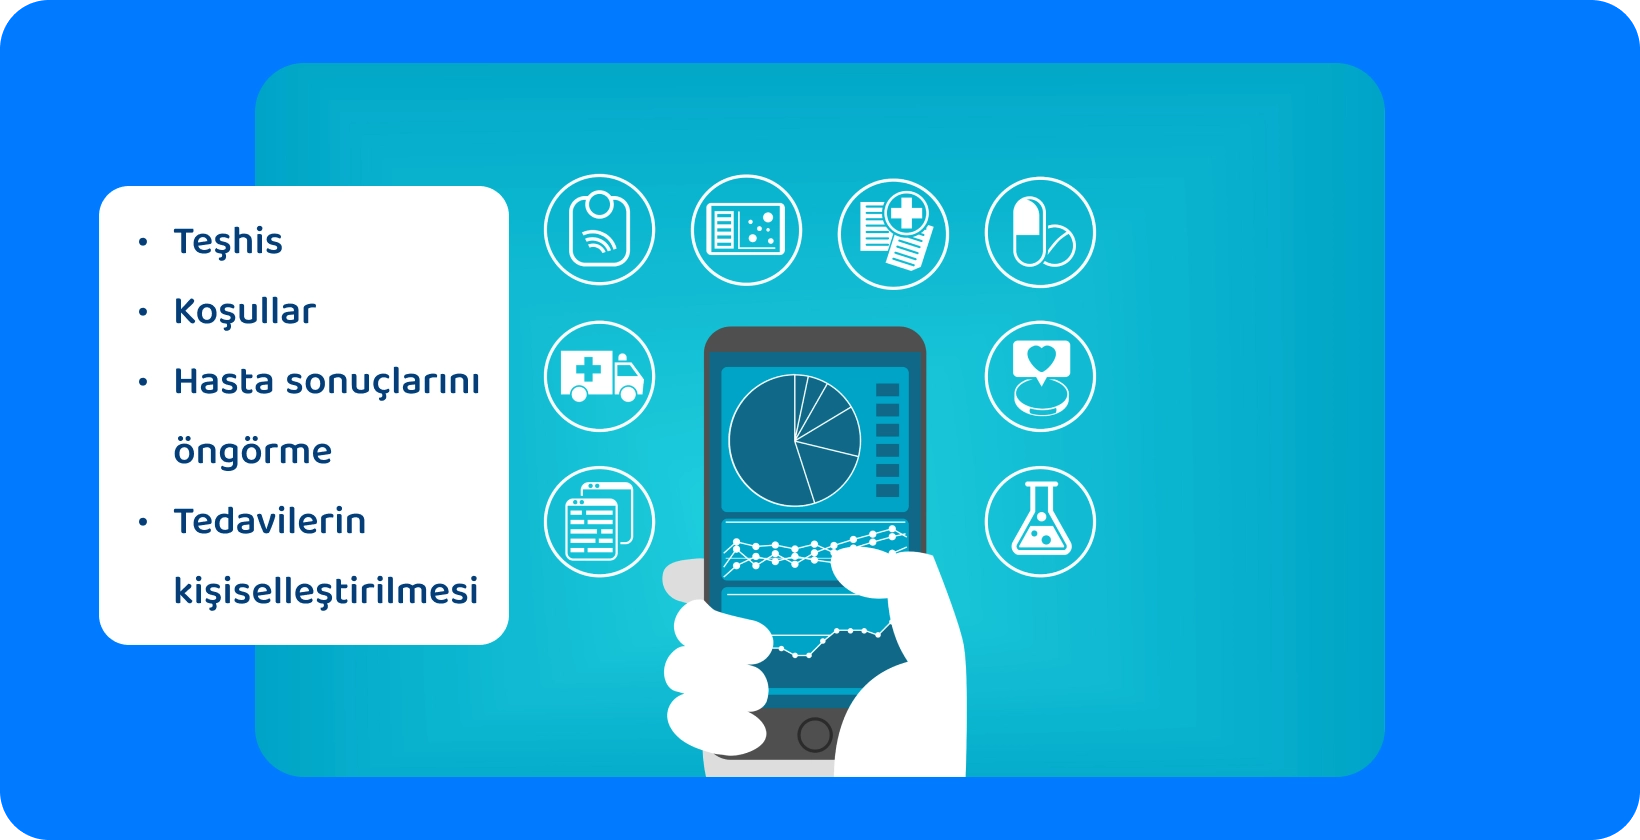 Çeşitli sağlık hizmetlerini temsil eden simgelerle çevrili bir pasta grafiği gösteren bir akıllı telefon tutan bir el.